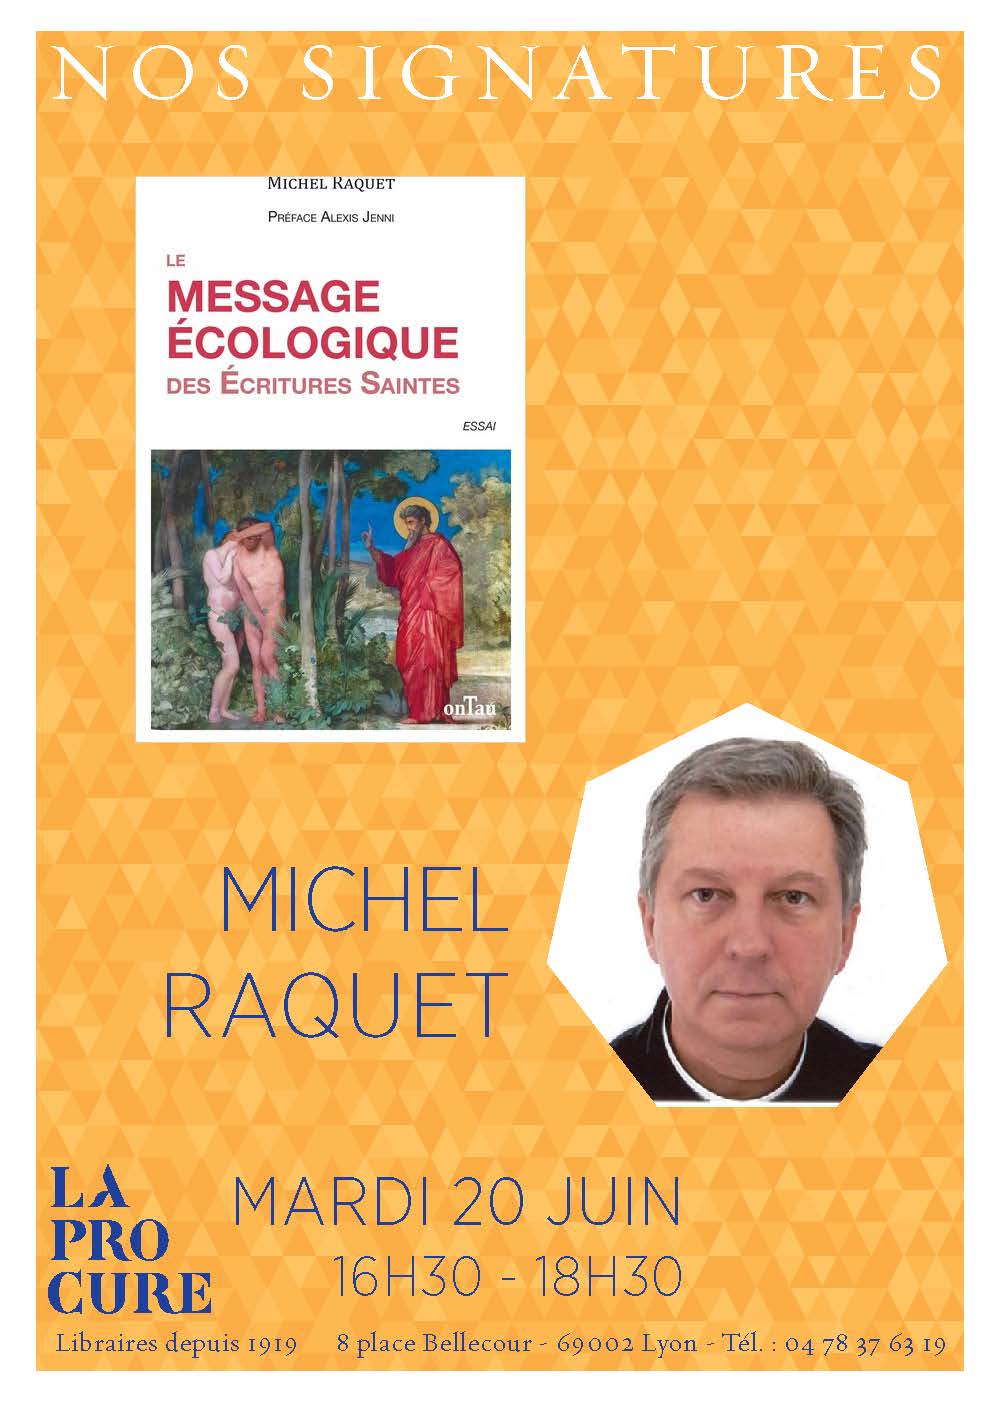 La Procure : 20 juin à 16h30 : Michel RAQUETL dédicacera son livre "Le  message écologique des Ecritures saintes"